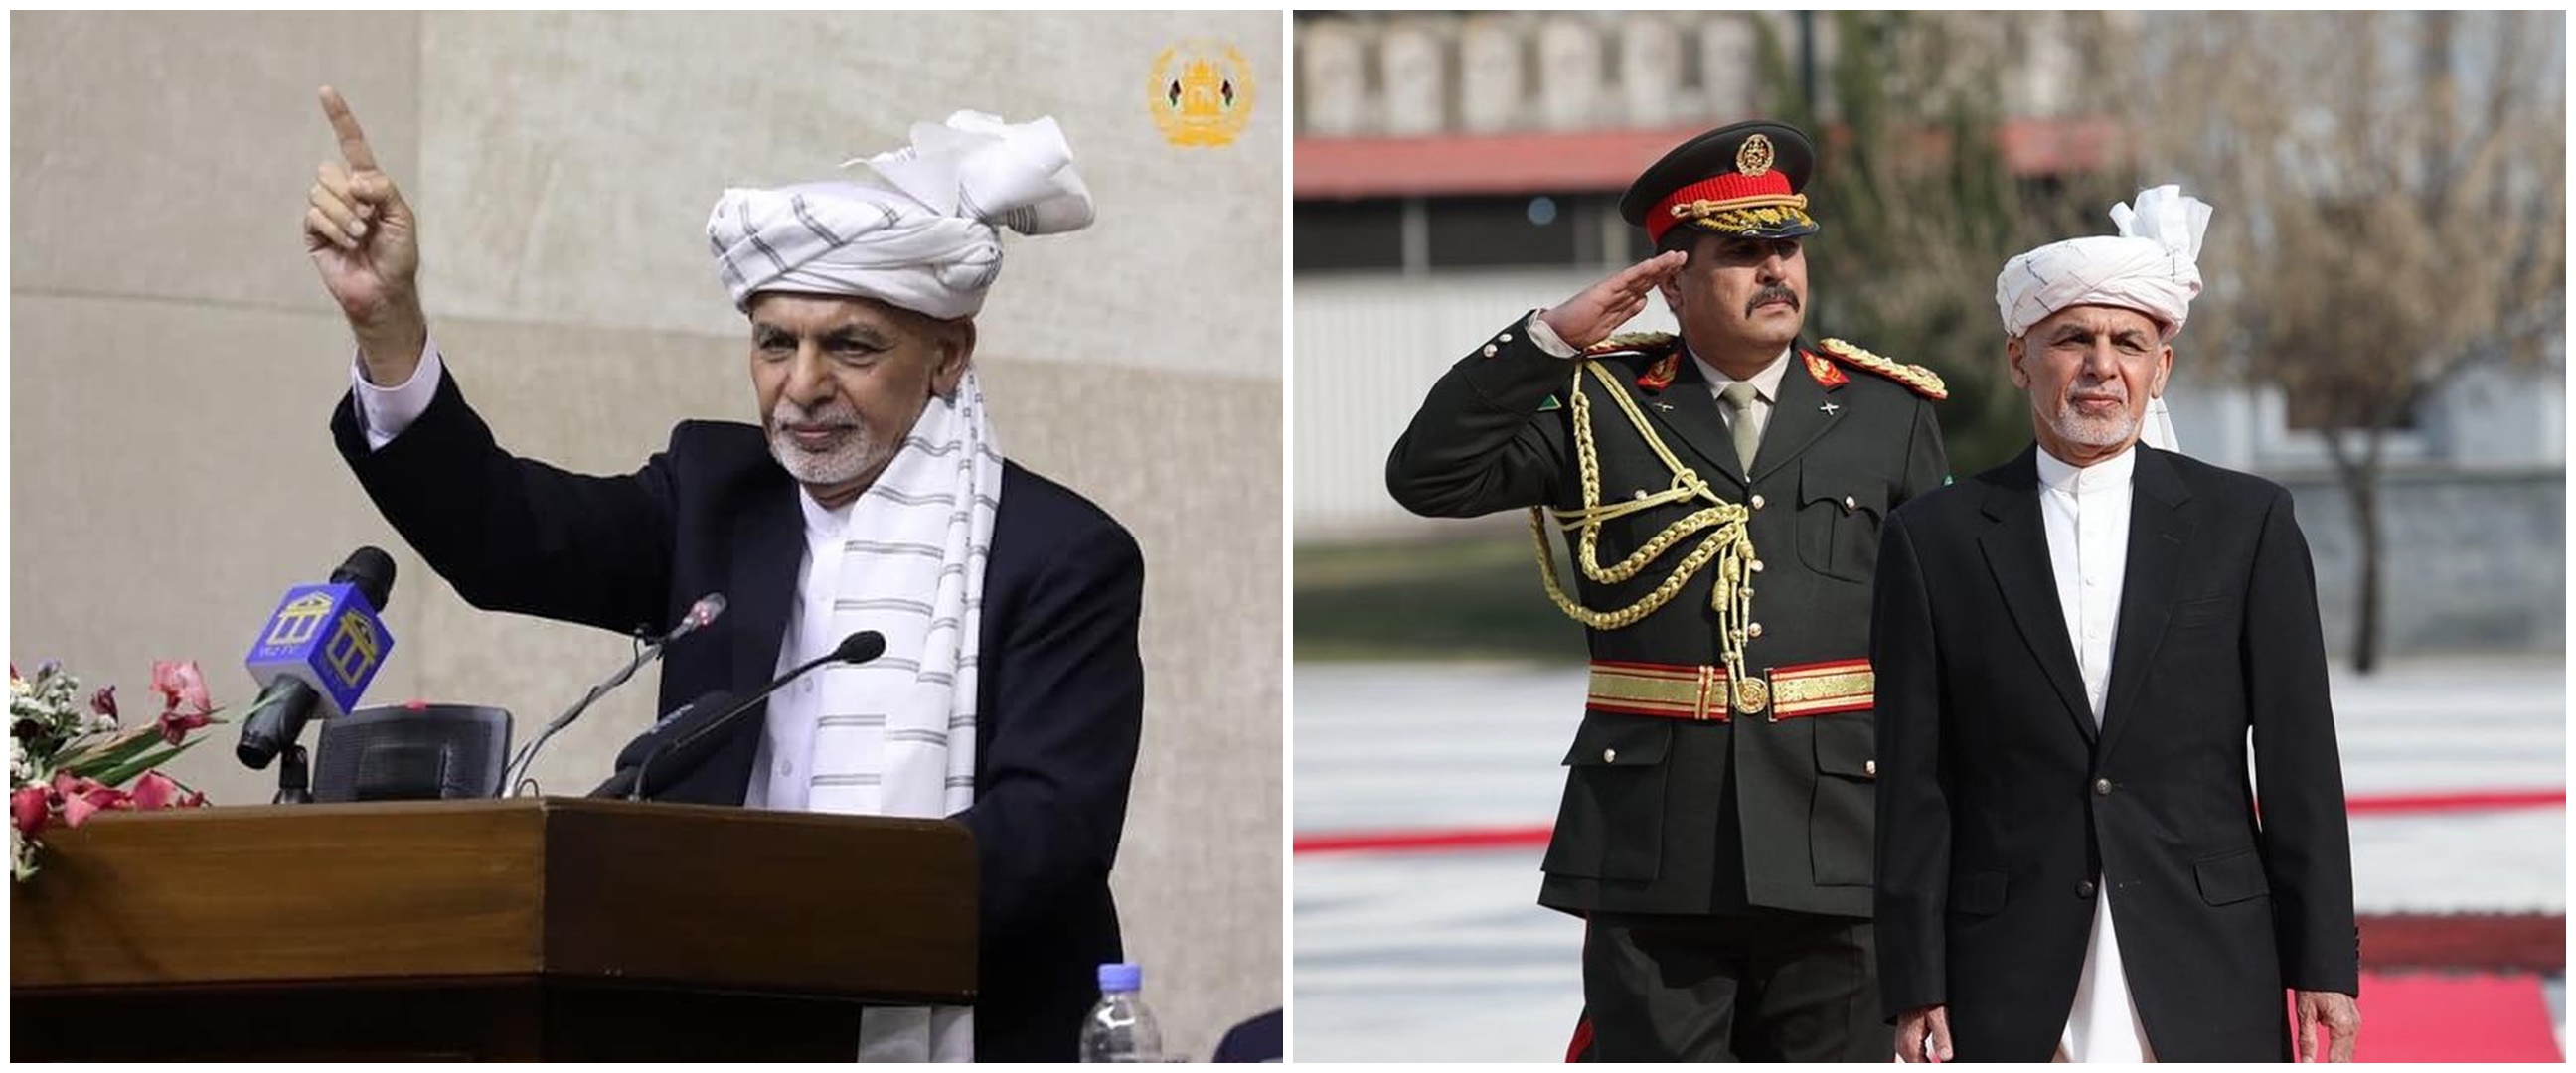 Ini alasan Presiden Afghanistan tinggalkan negara saat Taliban datang